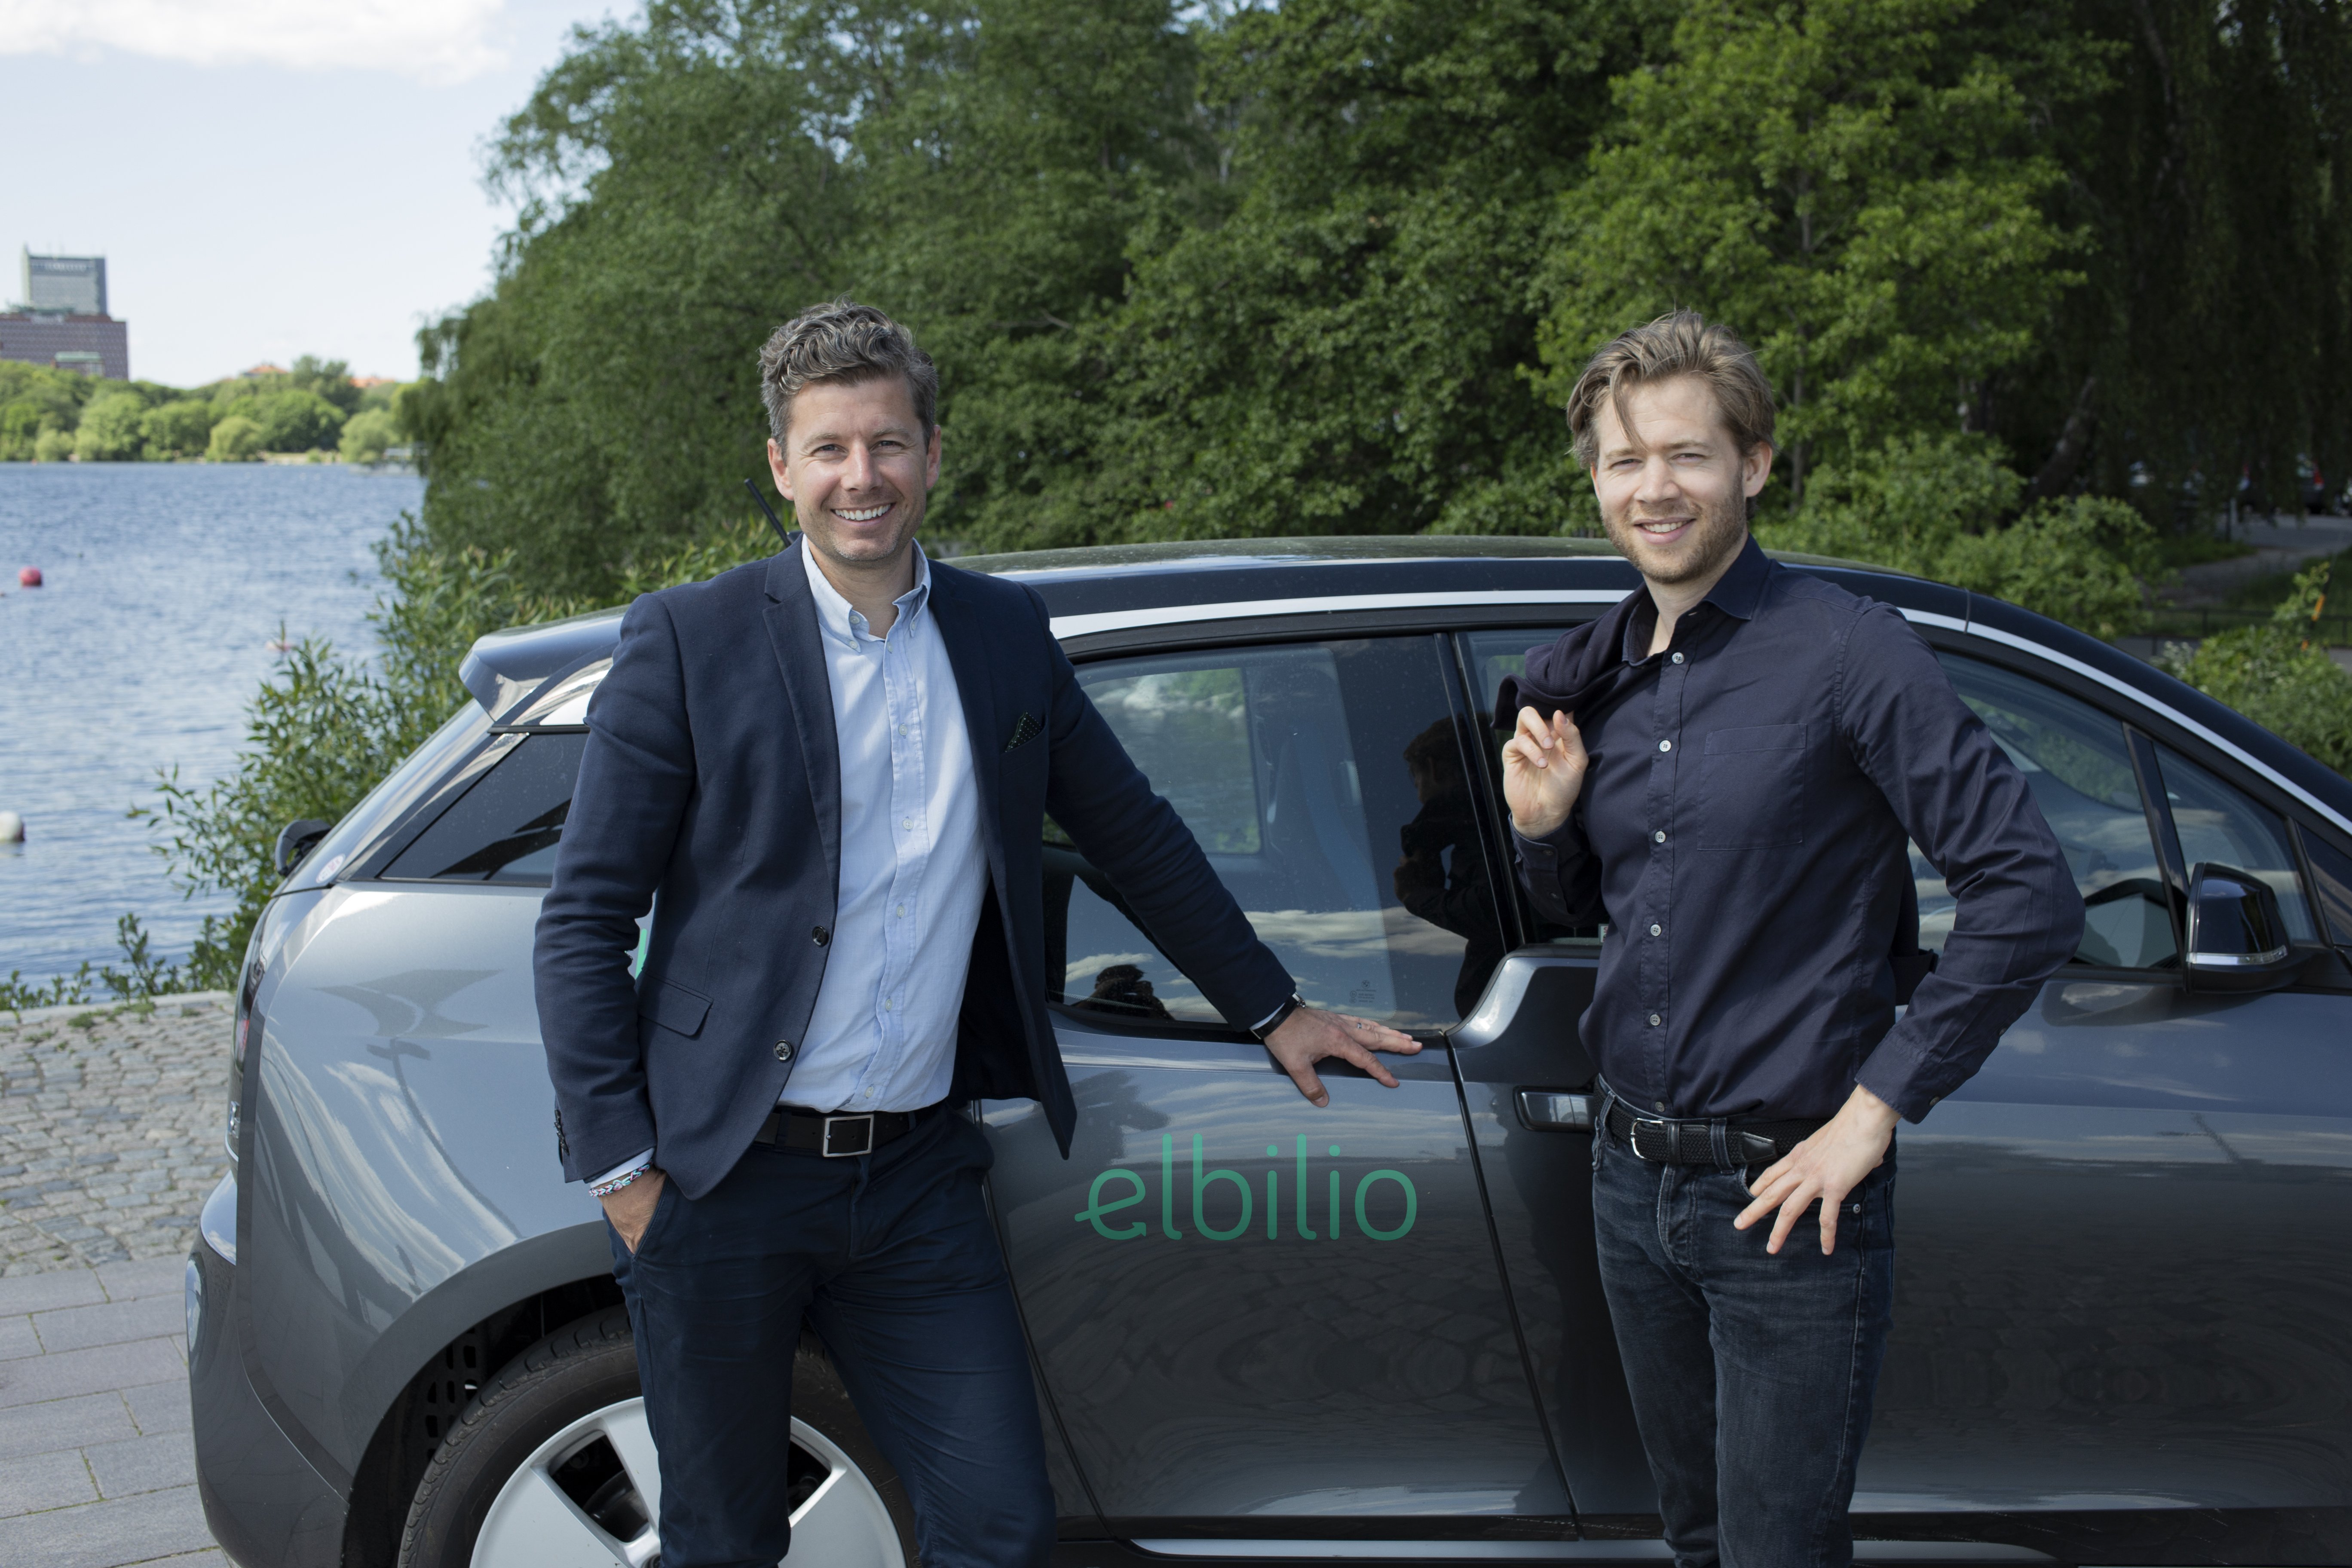 En BMW i3 med Elbilios ordförande, Johannes Asp, till vänster, och bolagets vd, Jesper Lönnqvist, till höger. Pressbild från Elbilio